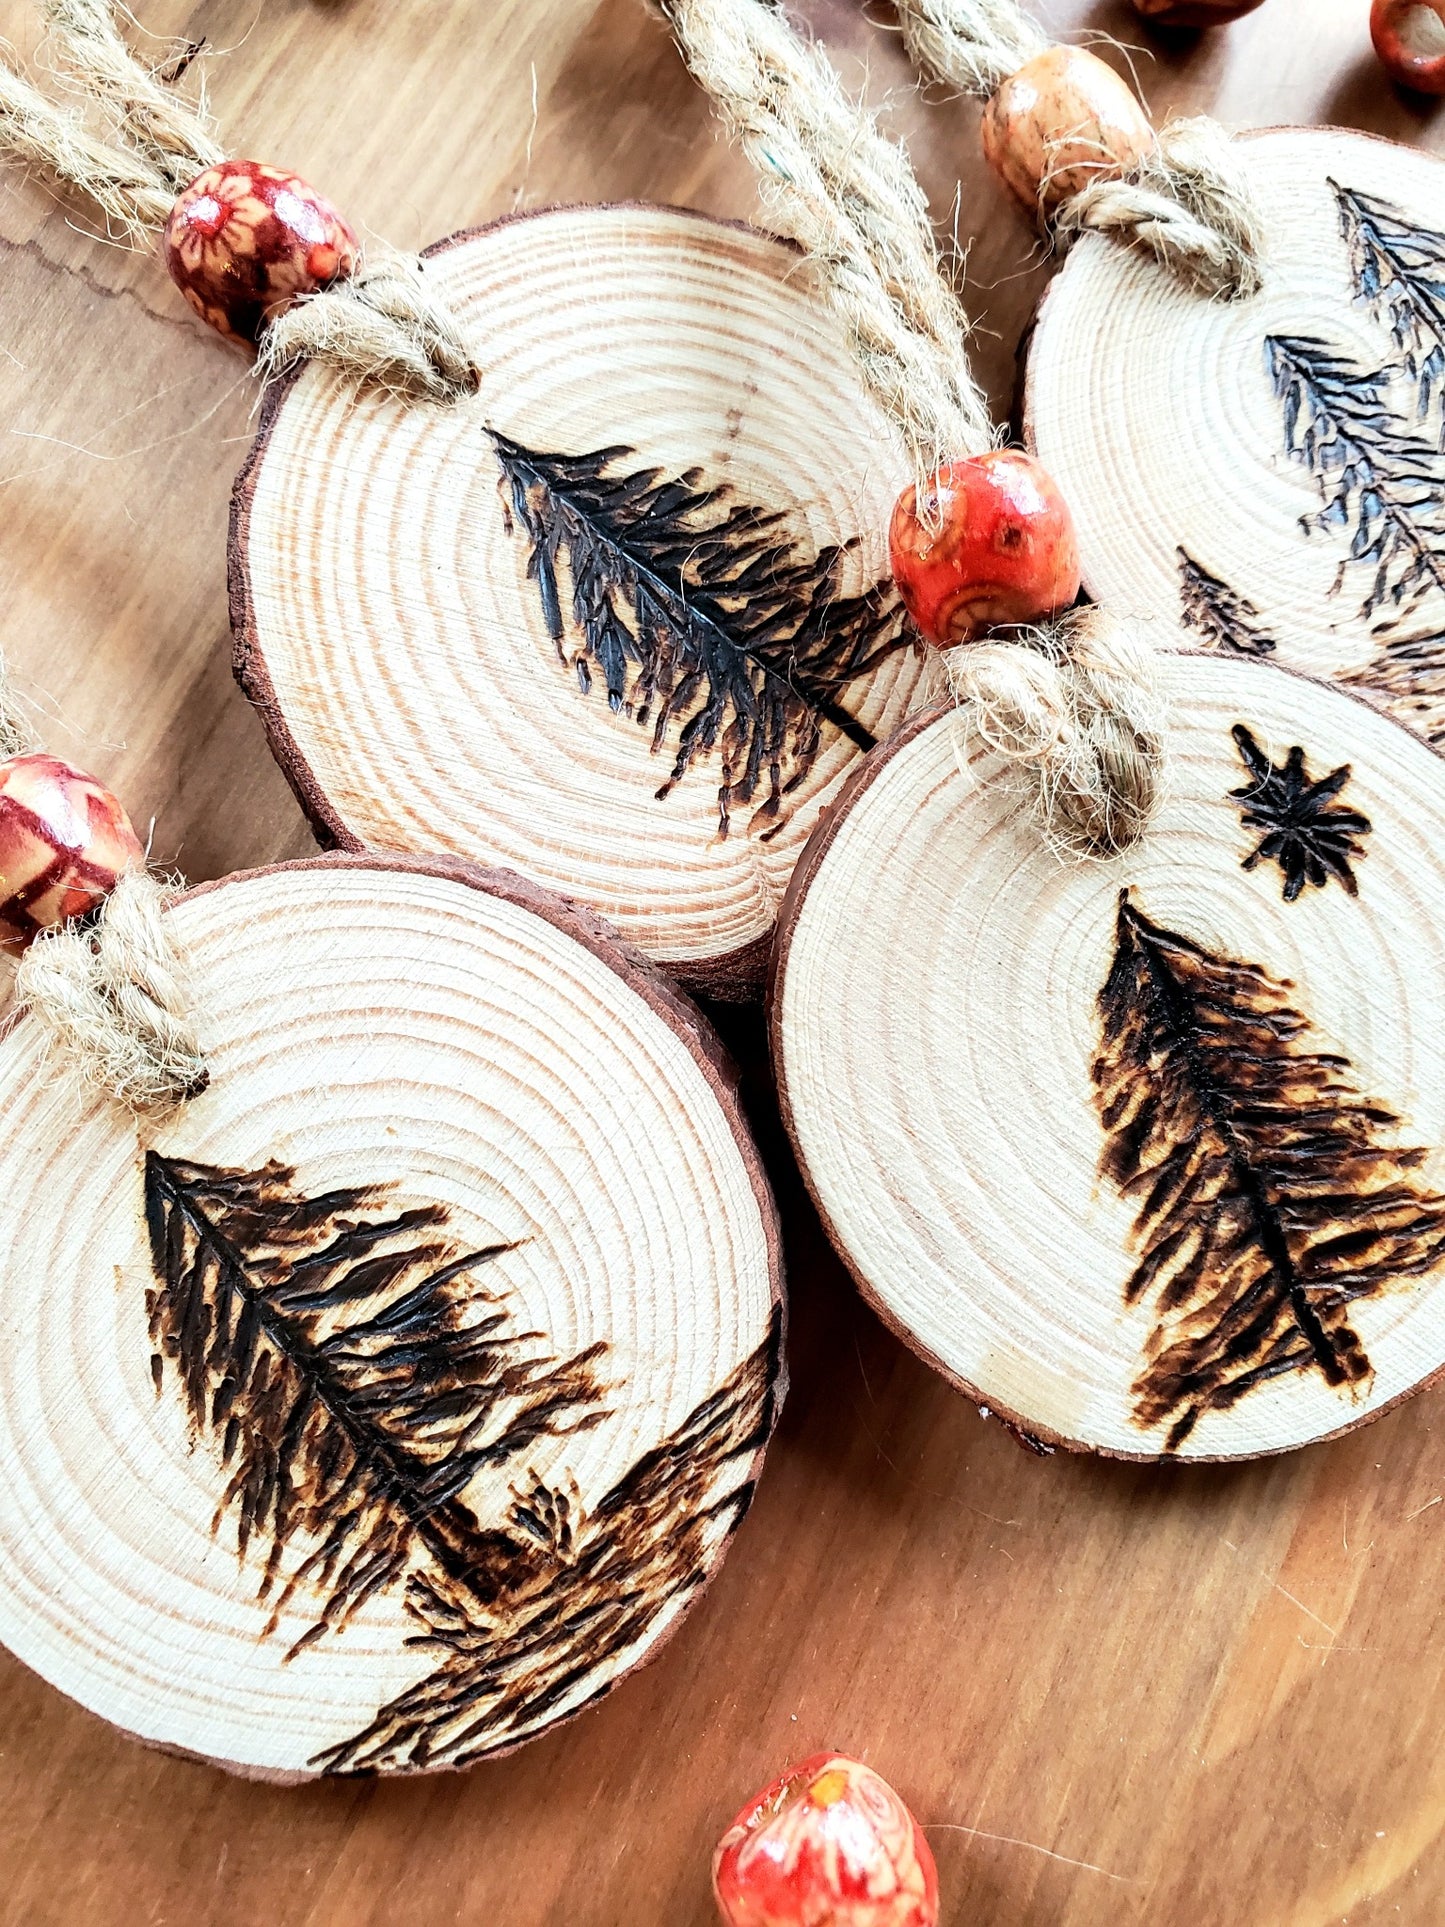 Wood Burned Ornaments